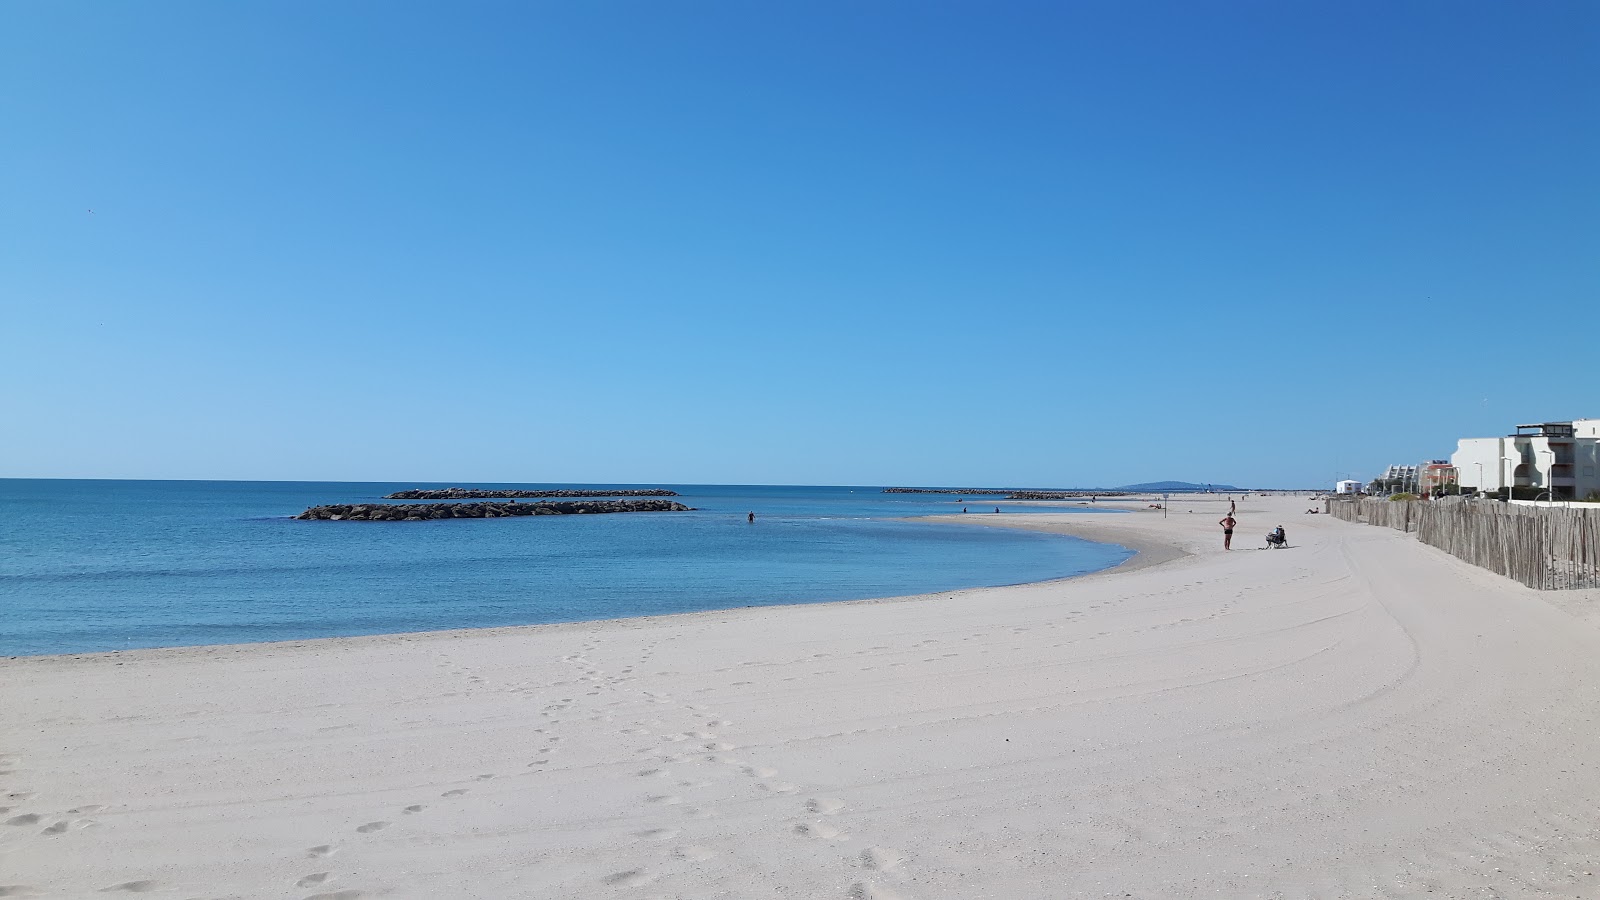 Zdjęcie Palavas beach z powierzchnią jasny piasek